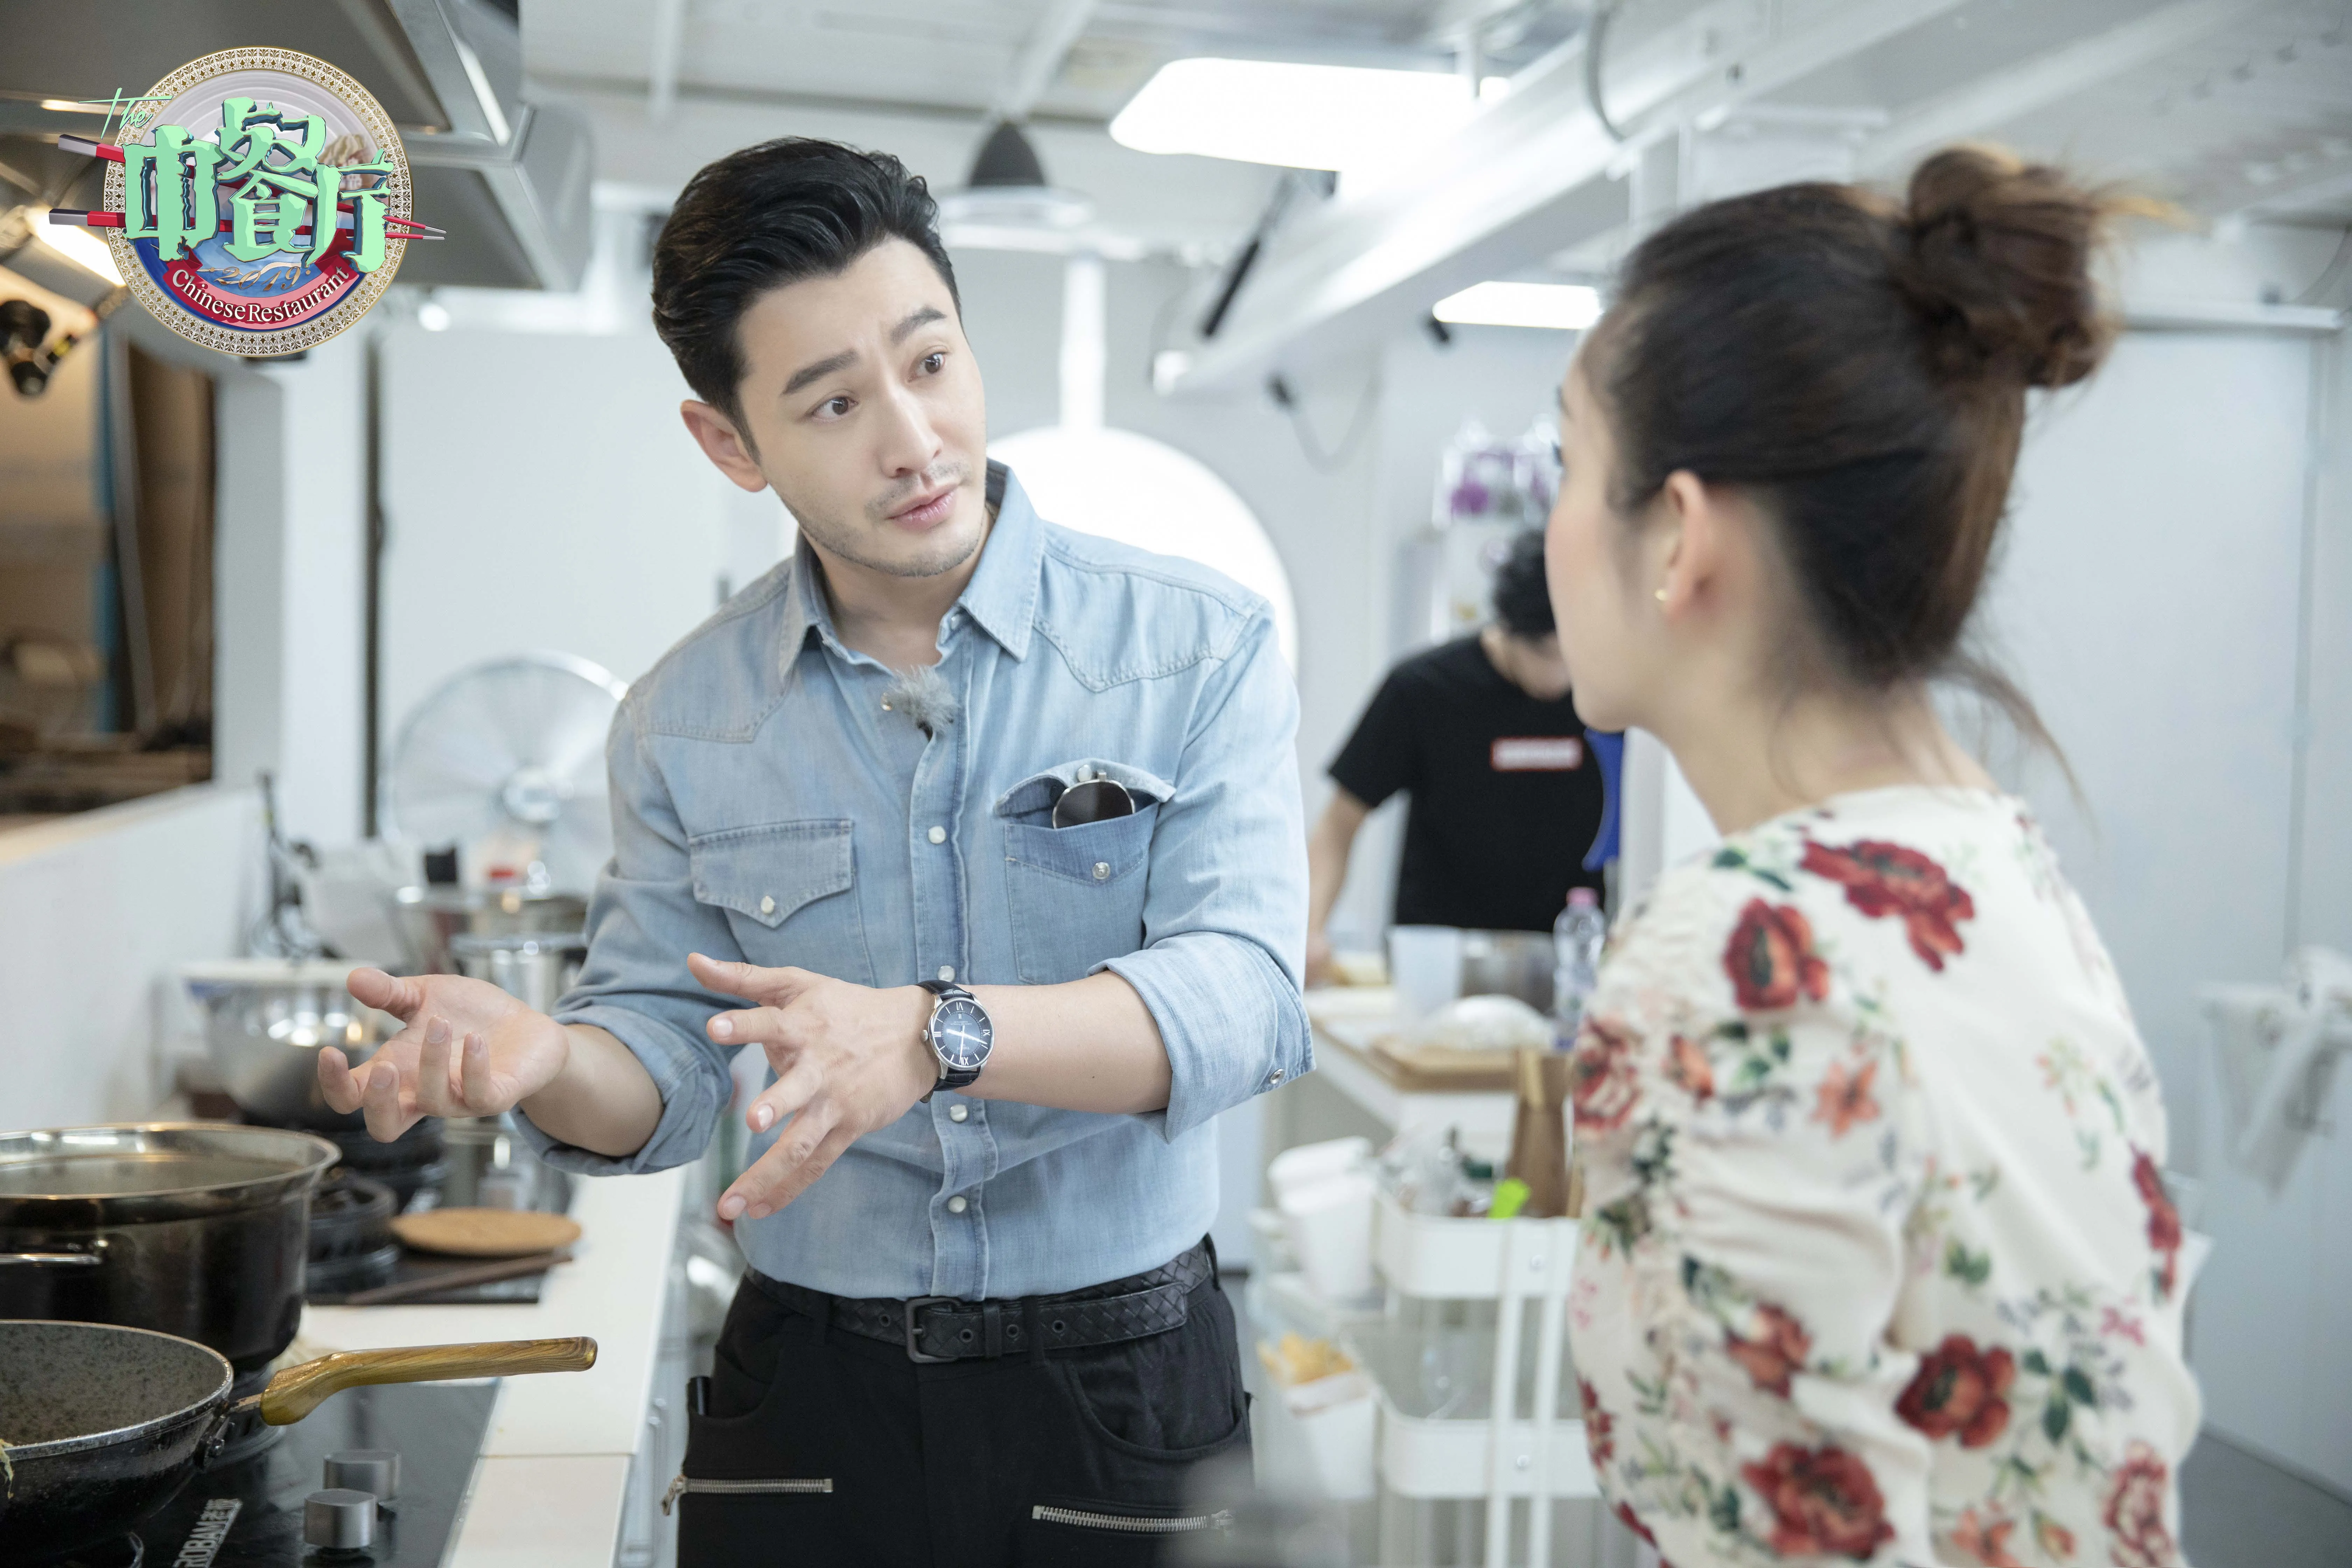  Xiaoming Huang 同秦海璐商讨关于餐厅接单时人员的安排.JPG